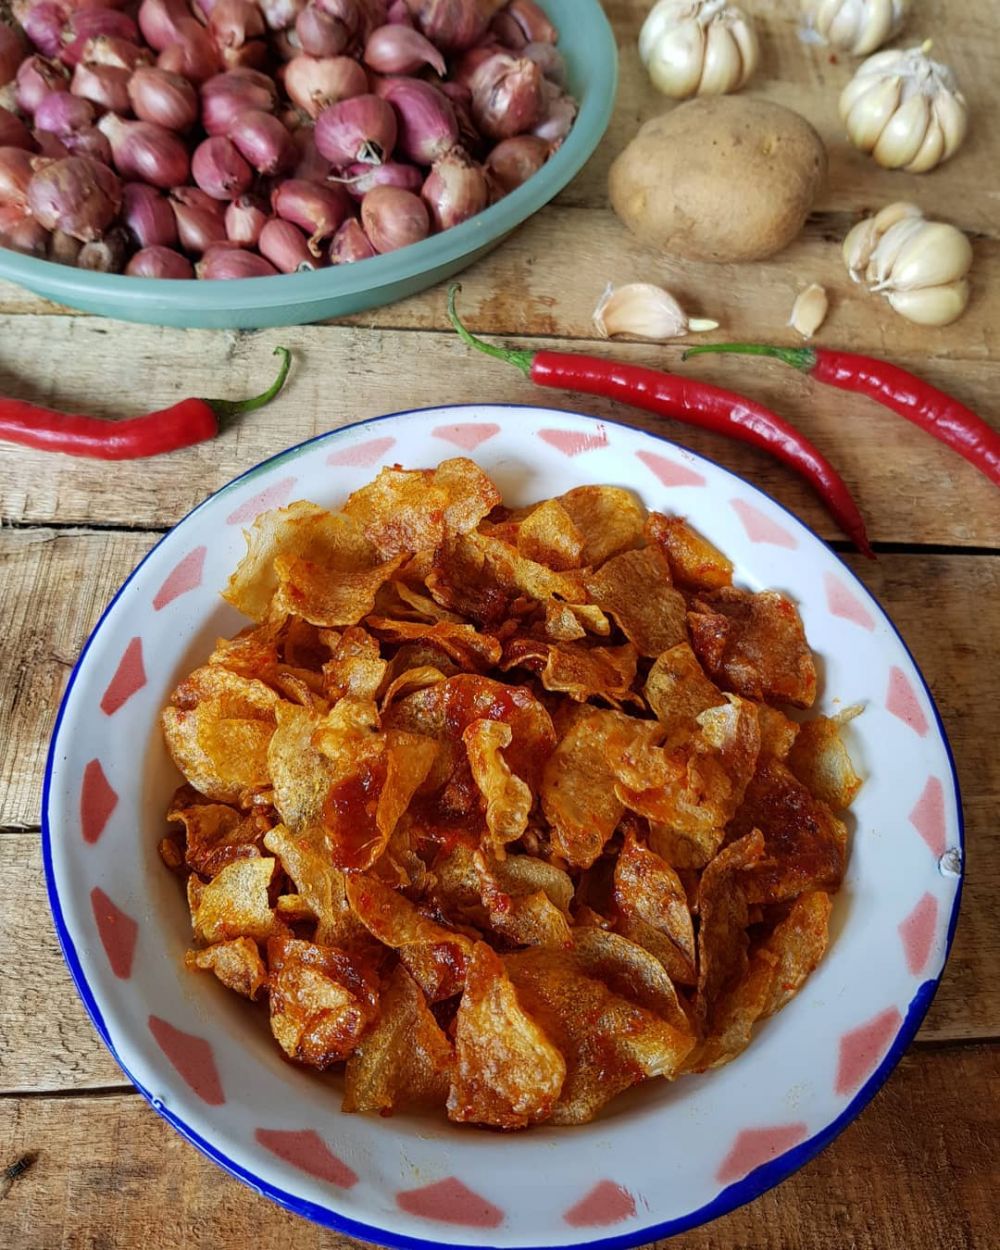 Resep masakan untuk hajatan paling populer Instagram